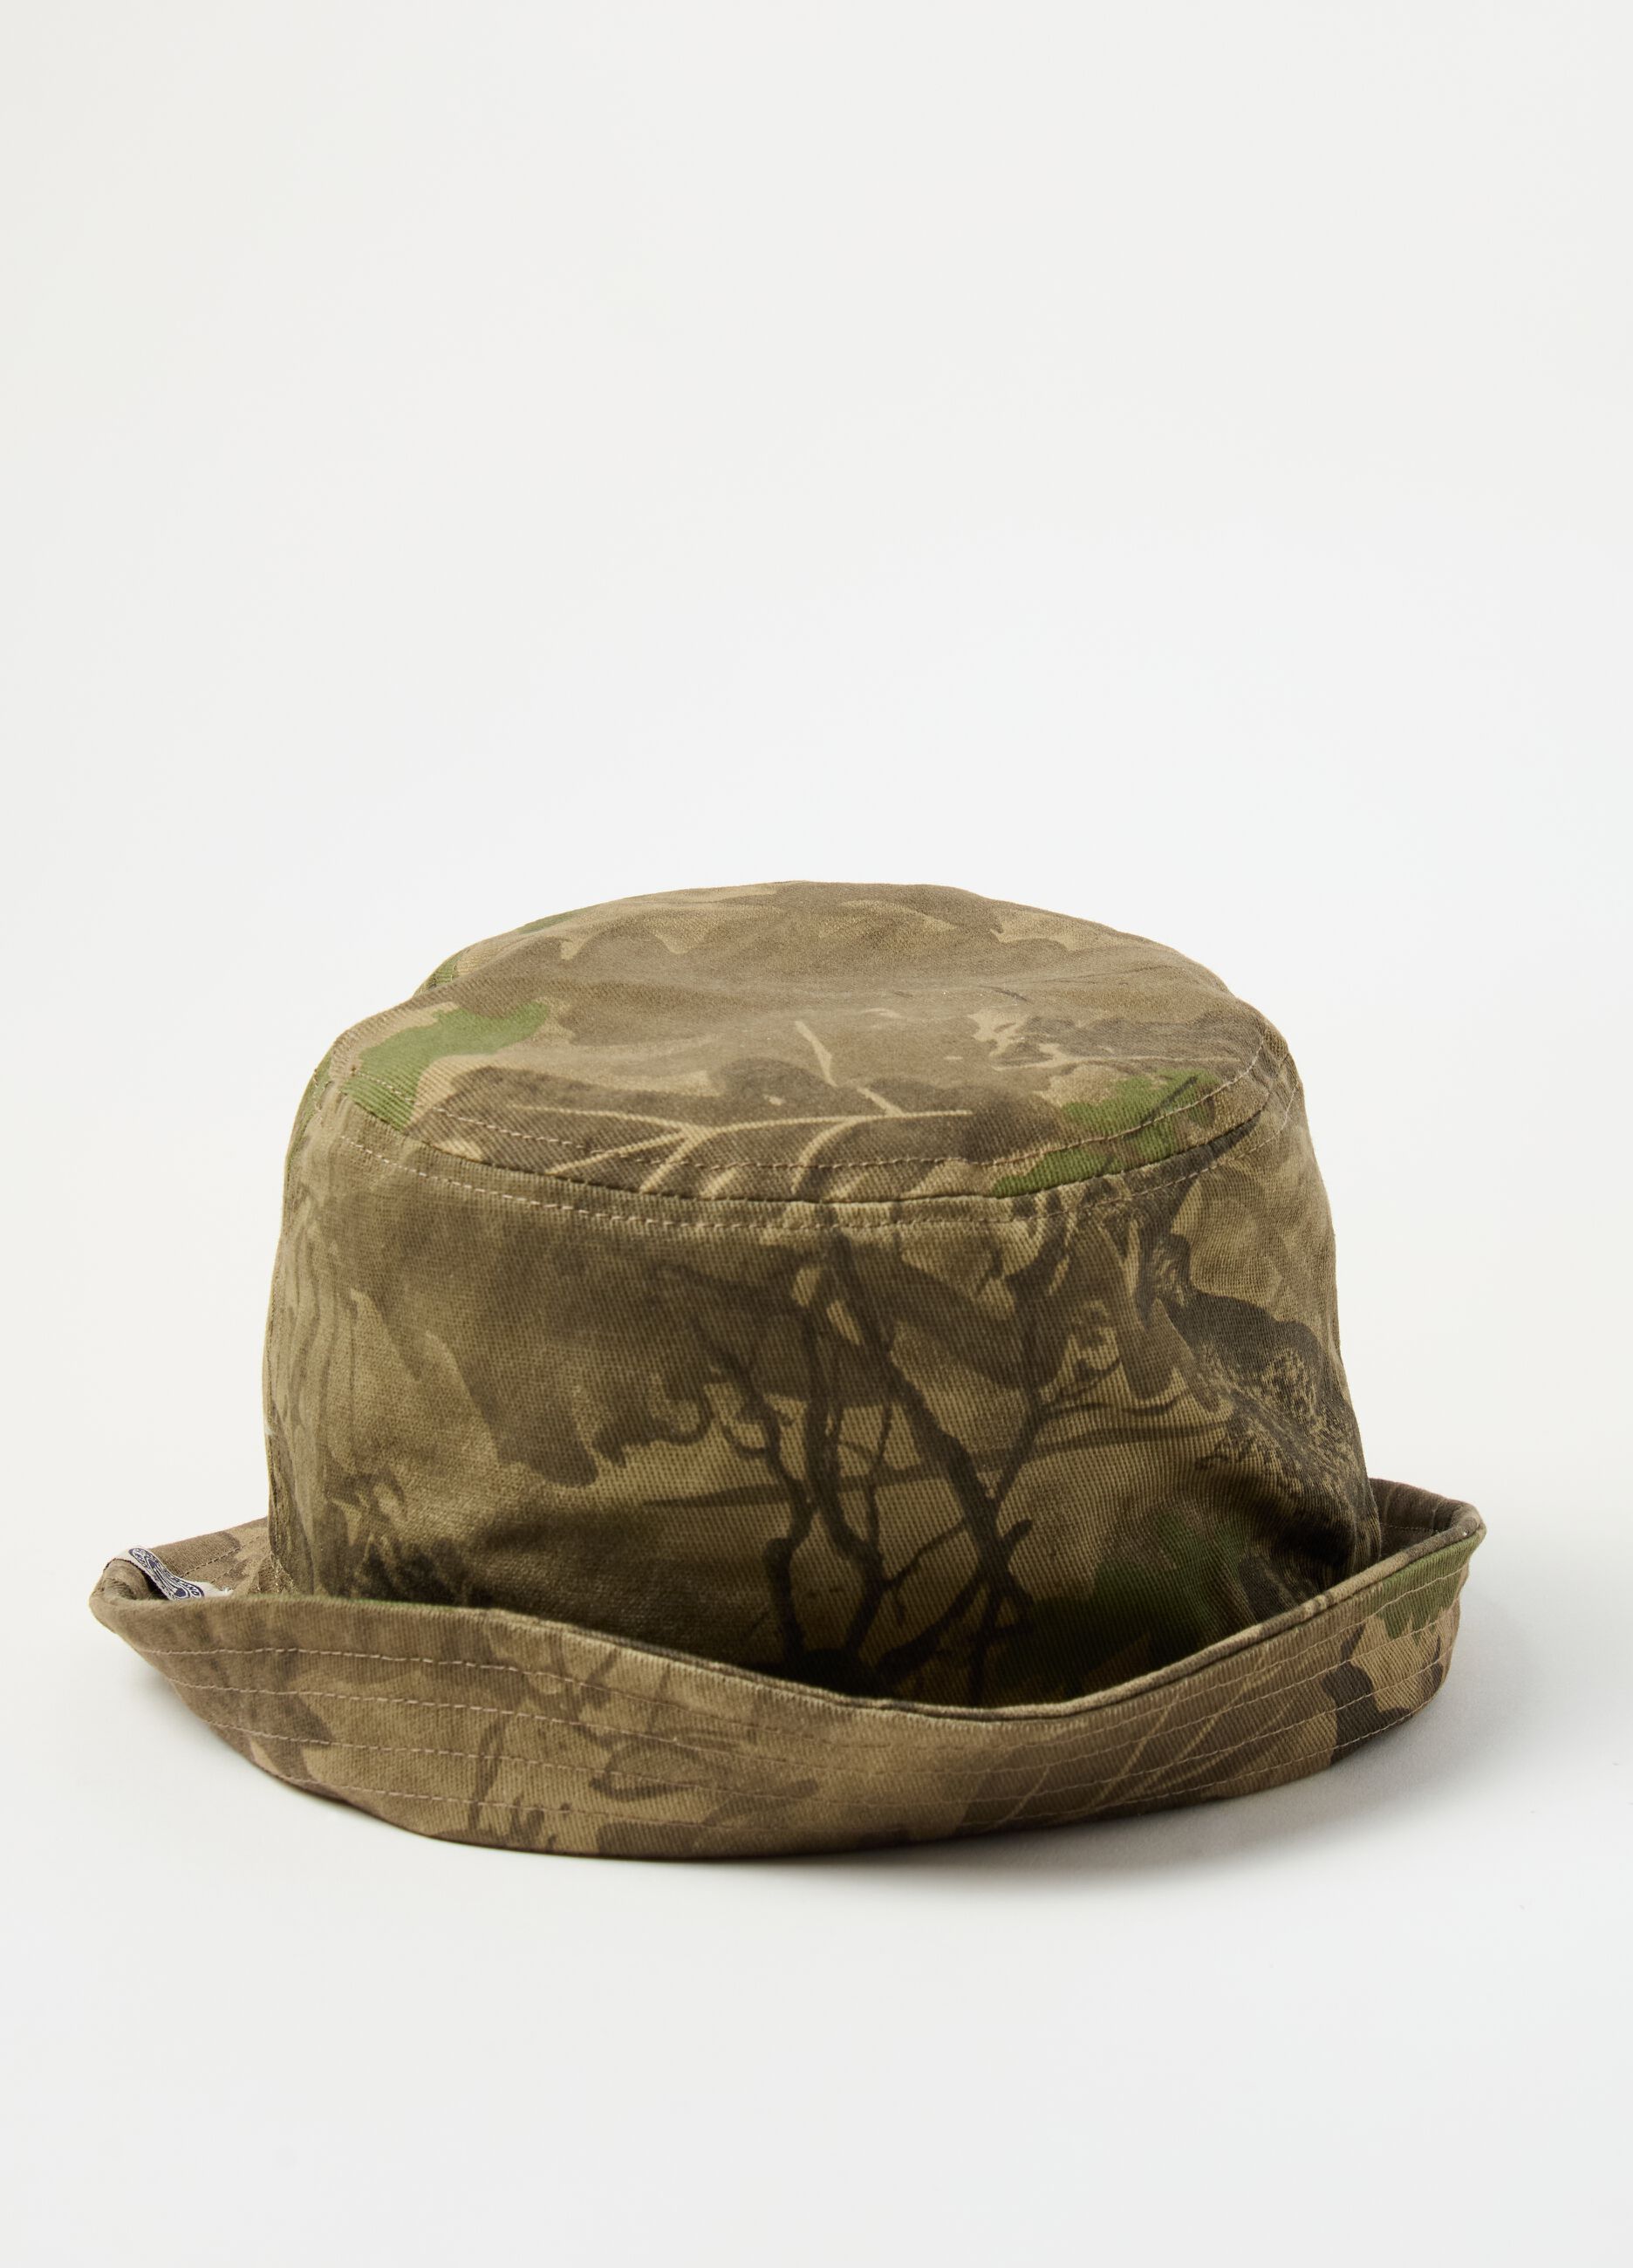 Fishing hat with foliage pattern